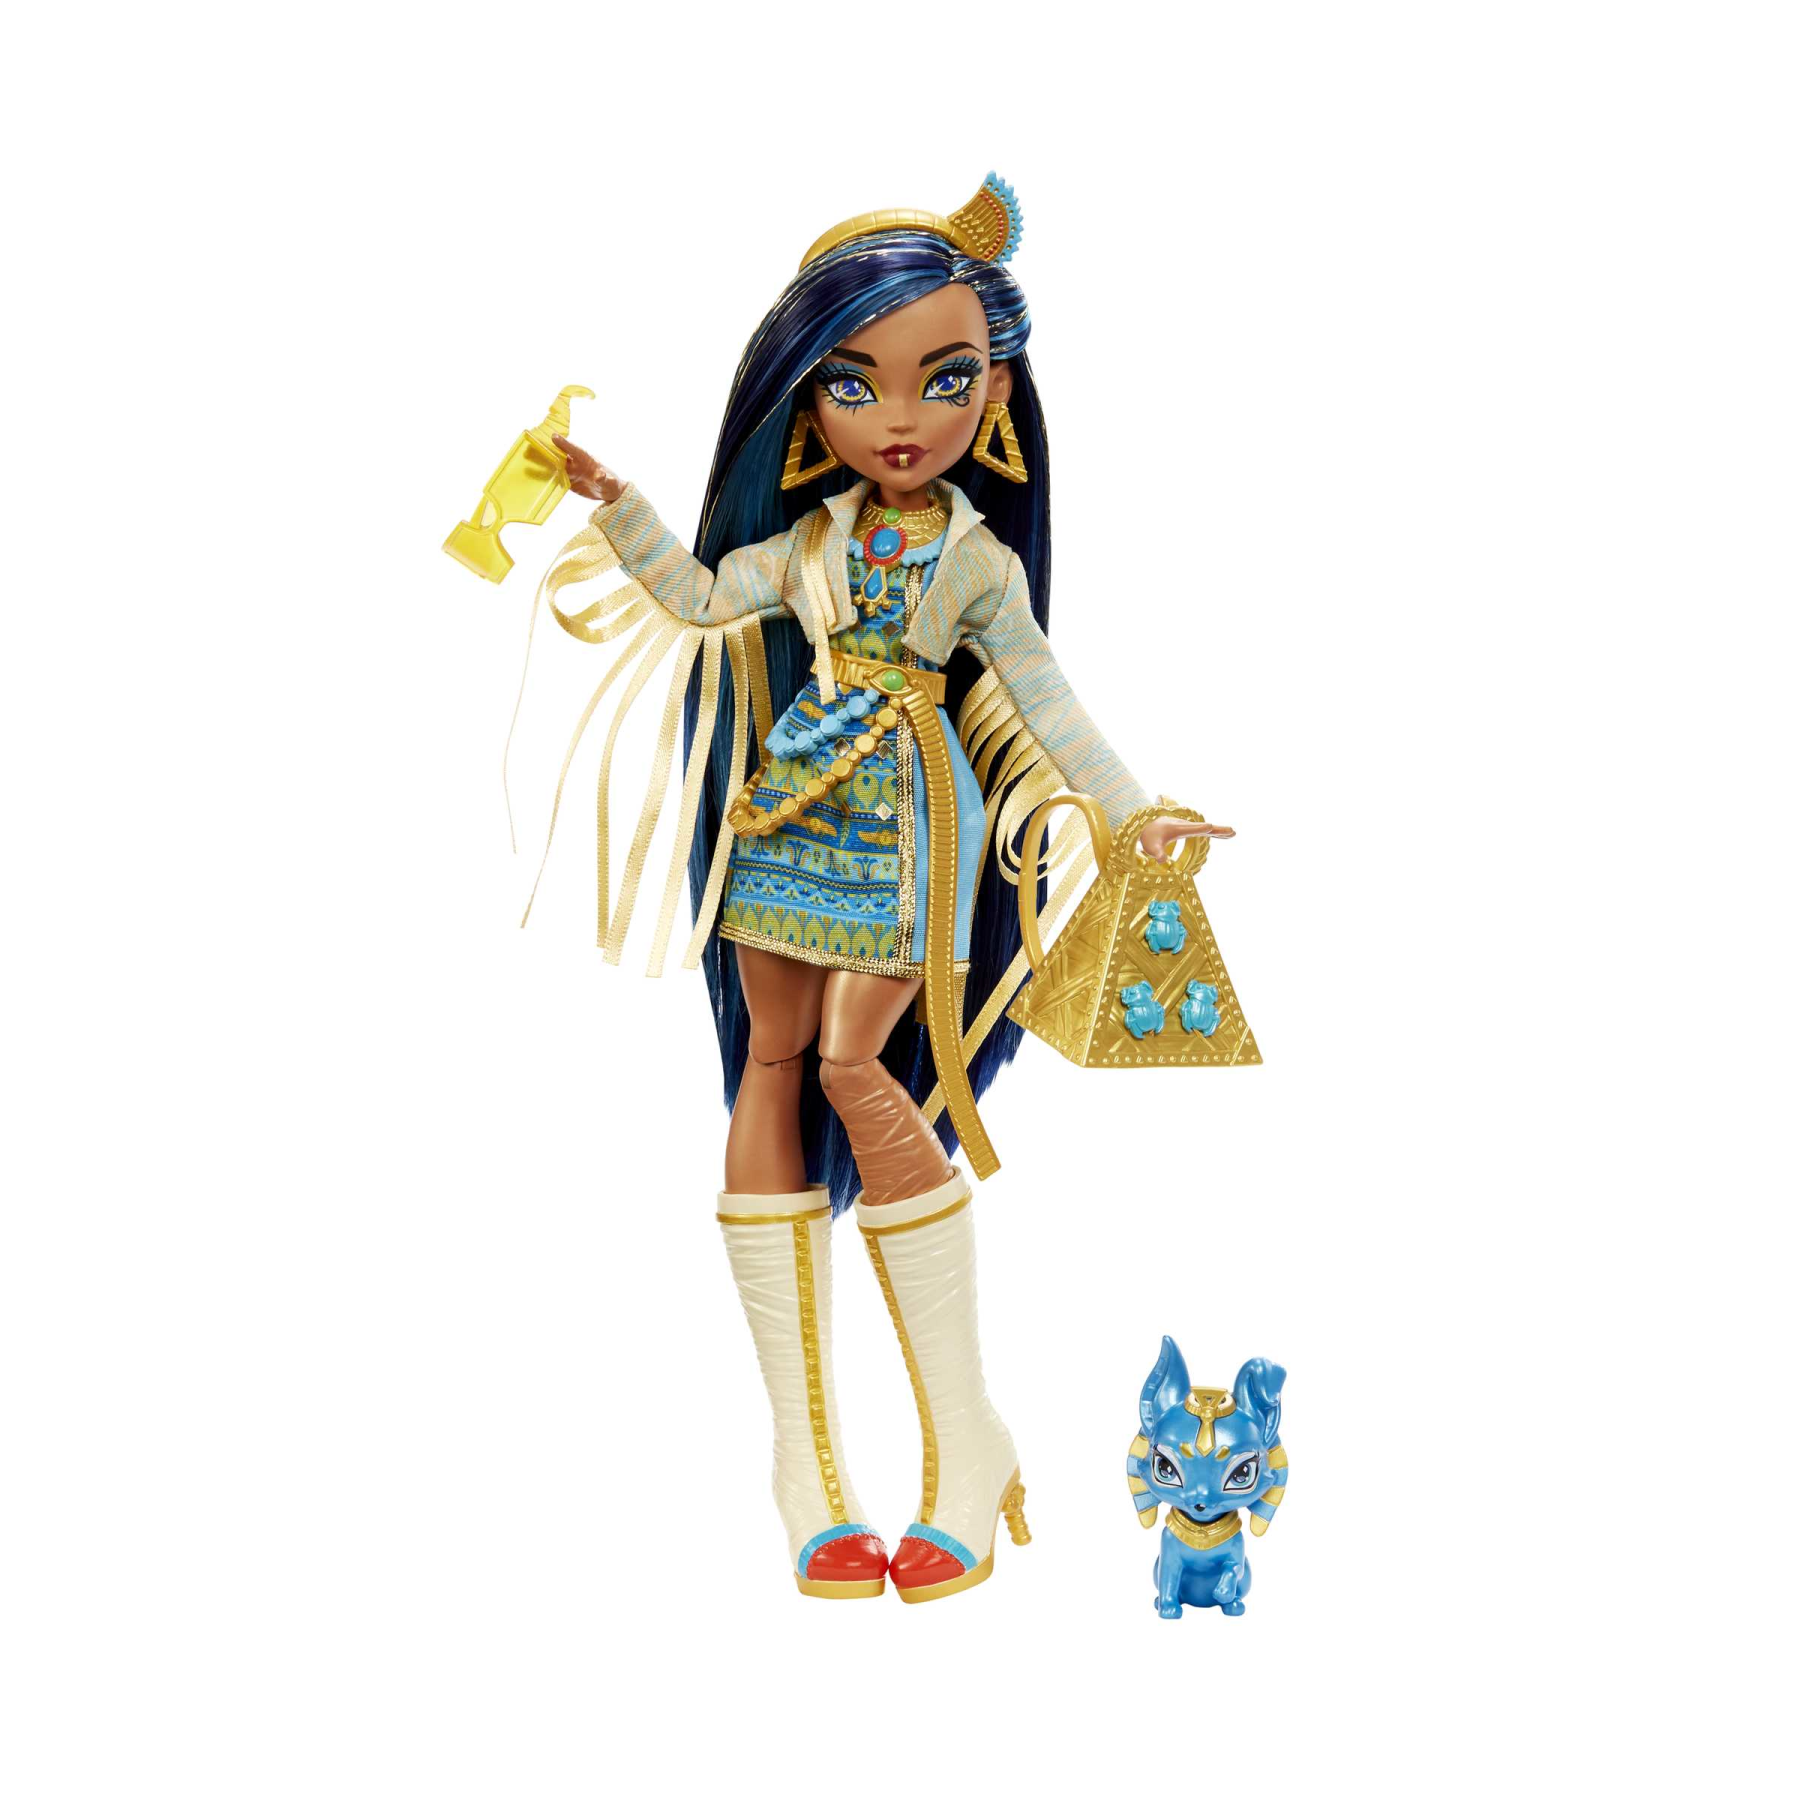 Monster high - cleo de nile, bambola snodata alla moda, dai capelli con ciocche blu, con accessori e cagnolino, giocattolo per bambini, 4+ anni, hhk54 - Monster High